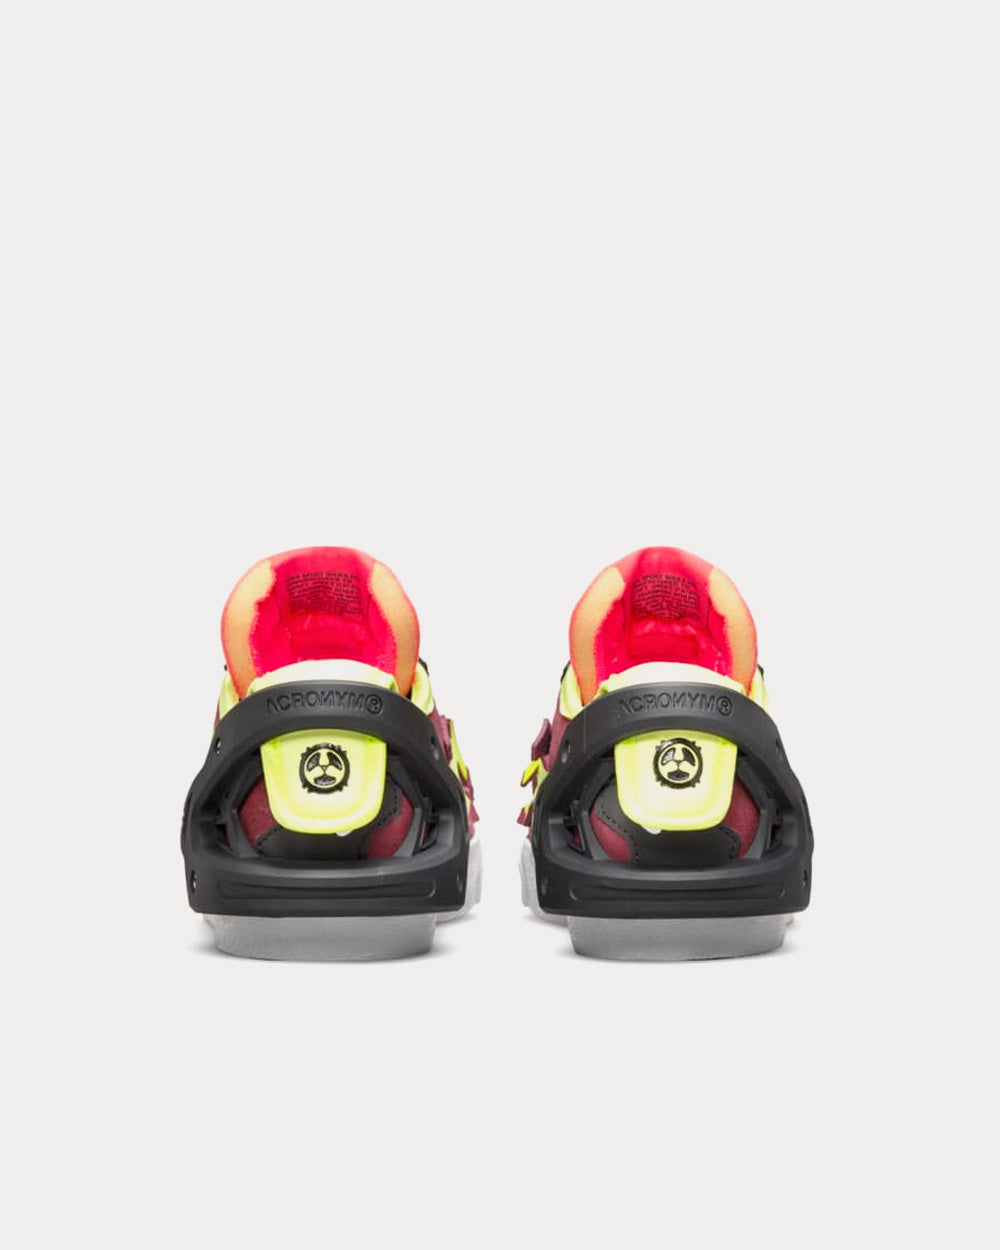 Nike x ACRONYM ® - Blazer Low Night Maroon Low Top Sneakers